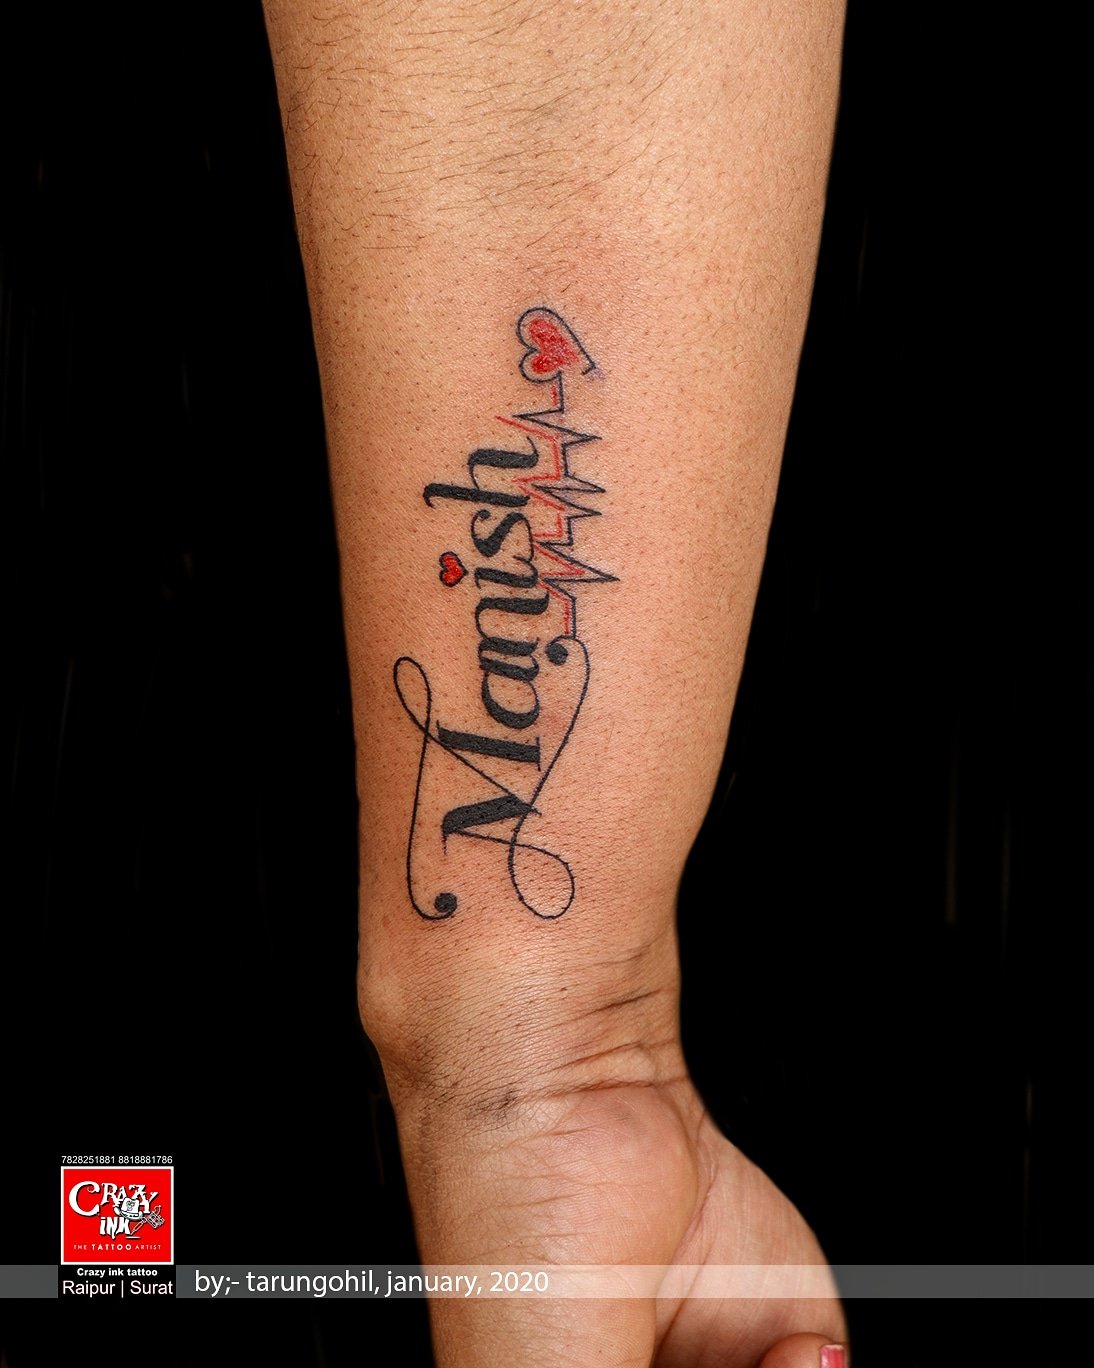 Tarun name tattoo  Nu ink tattoo zone  Tattooby Anshul  Contact us   9829431270  8118860214  tattoos tattoo ink inked tattooartist   By Nu ink tattoo zone  Facebook